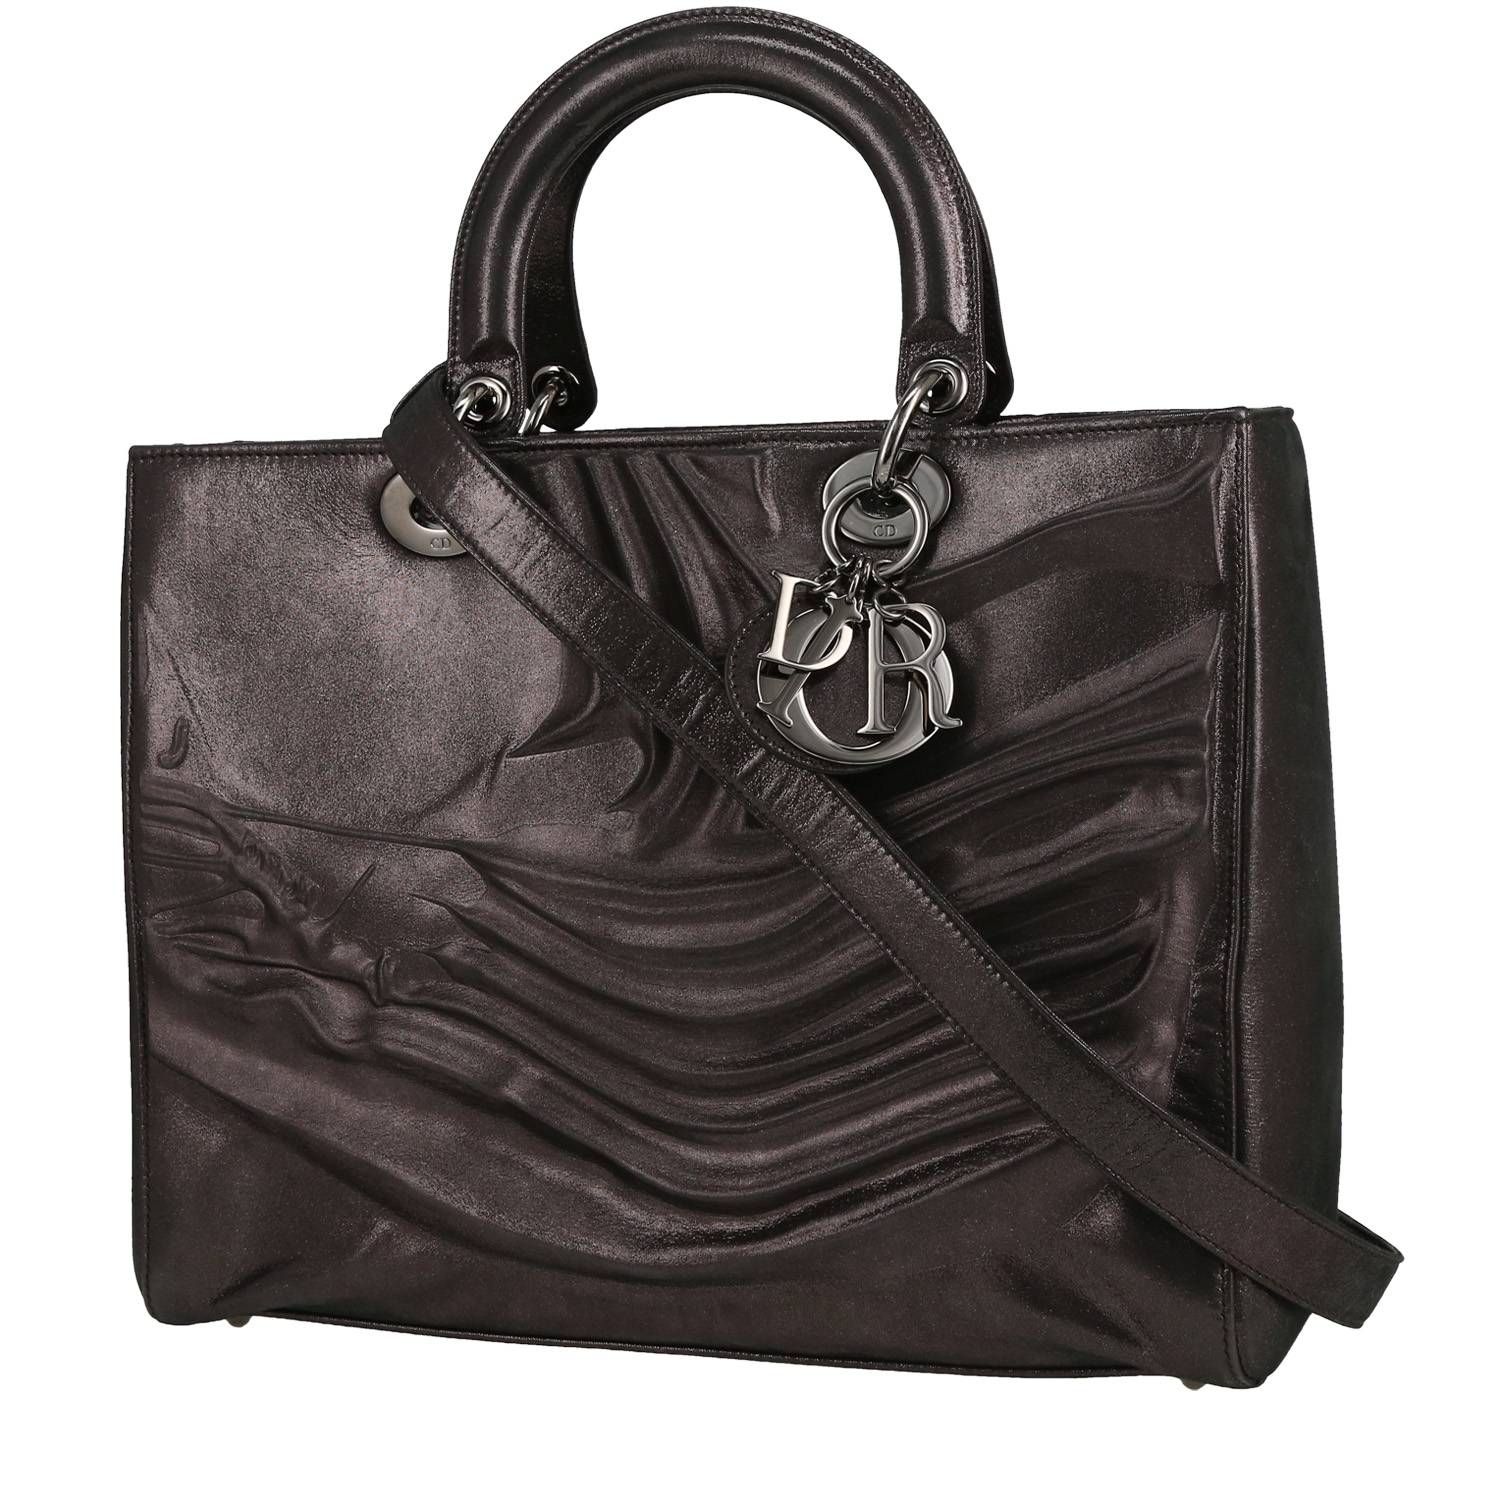 sac à main dior lady dior edition limitée en cuir irisé noir et